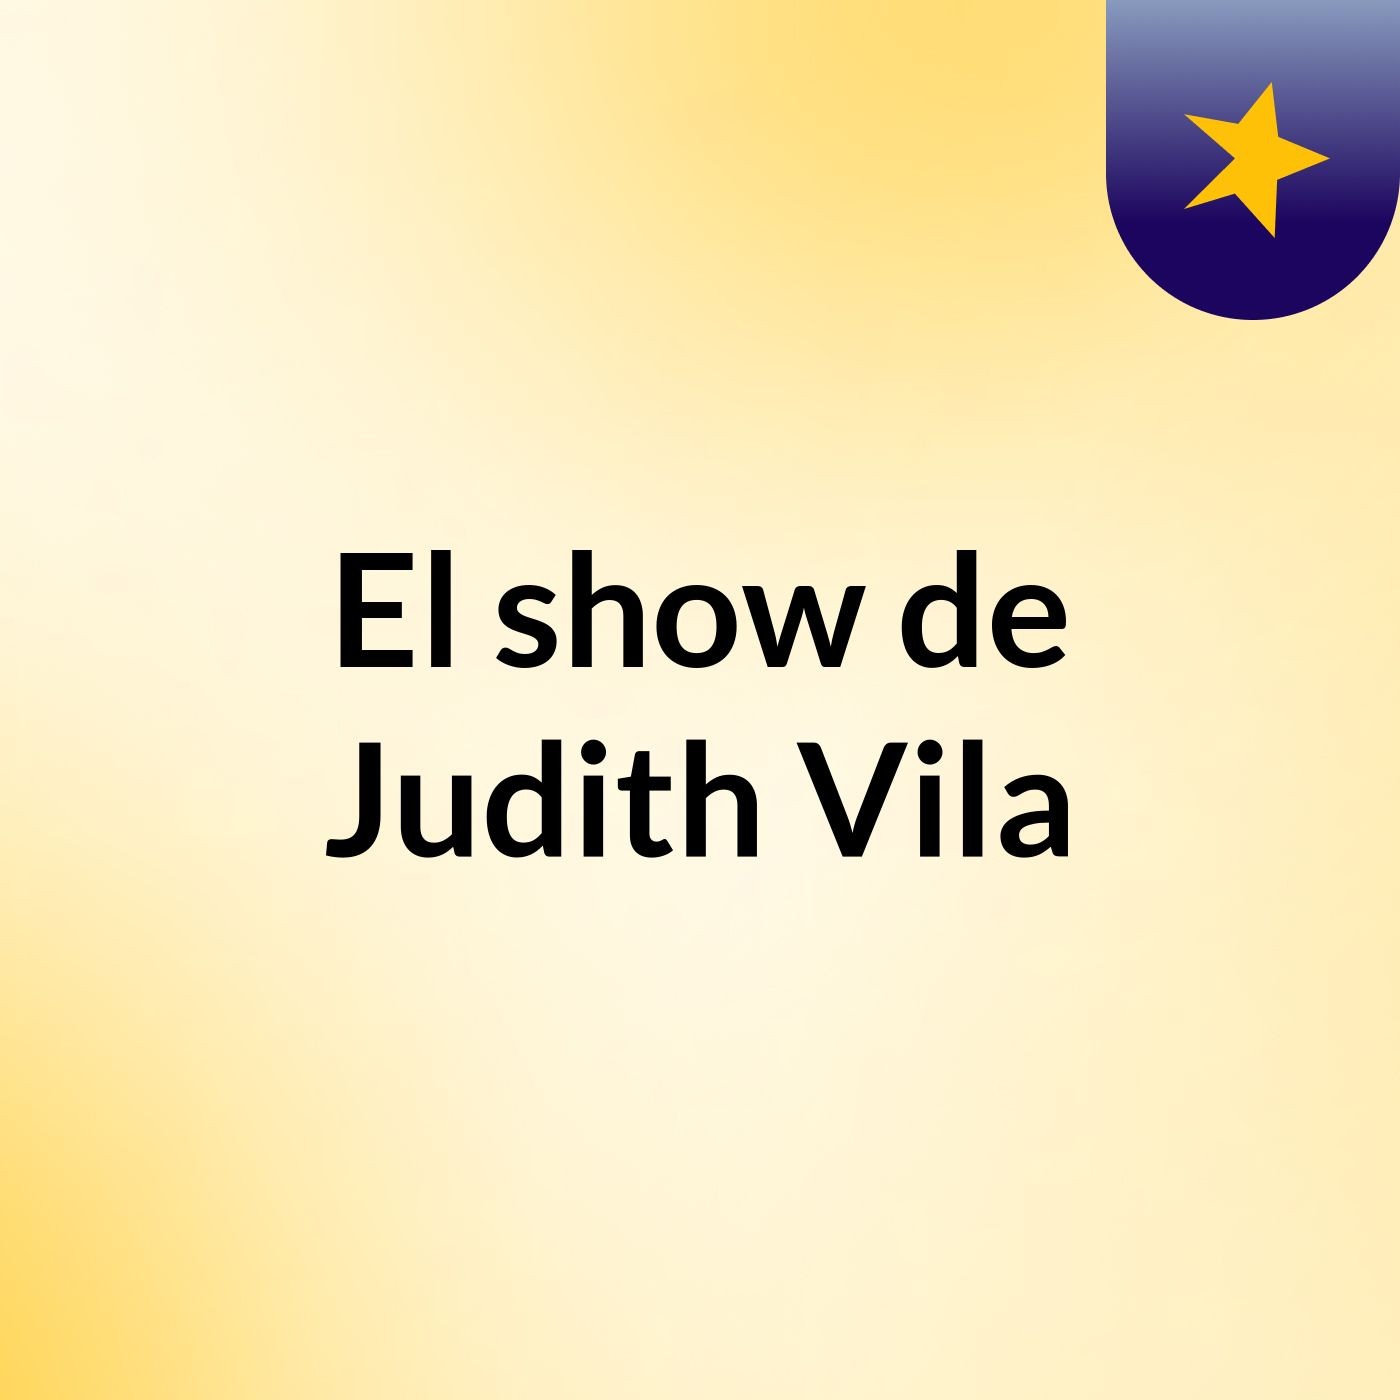 El show de Judith Vila